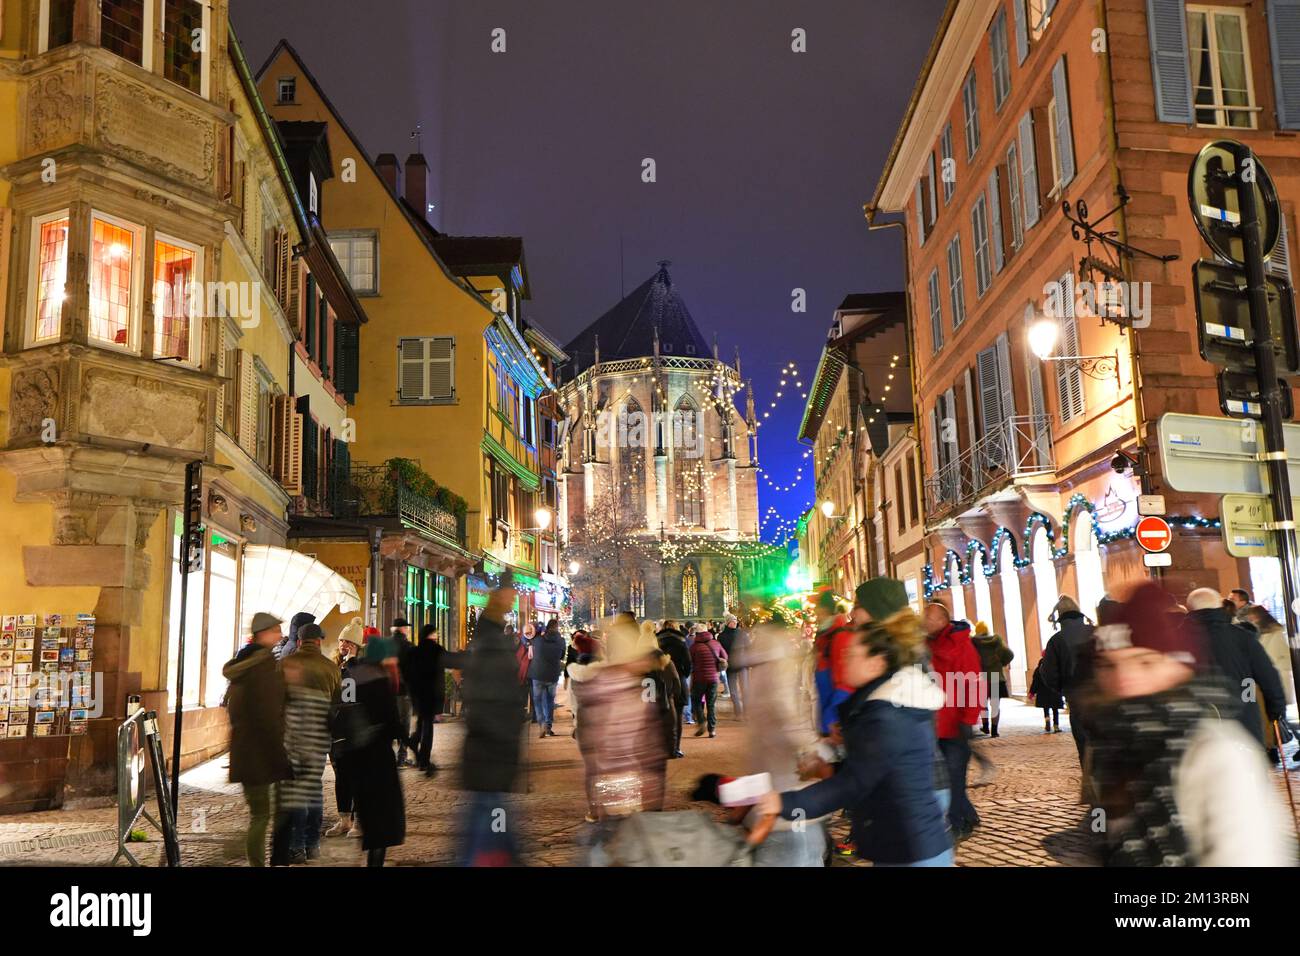 Traditionelle alte Fachwerkhäuser in der historischen Stadt Colmar. Dekoriert und beleuchtet während der Weihnachtszeit. Colmar, Frankreich - 2022. Dezember Stockfoto